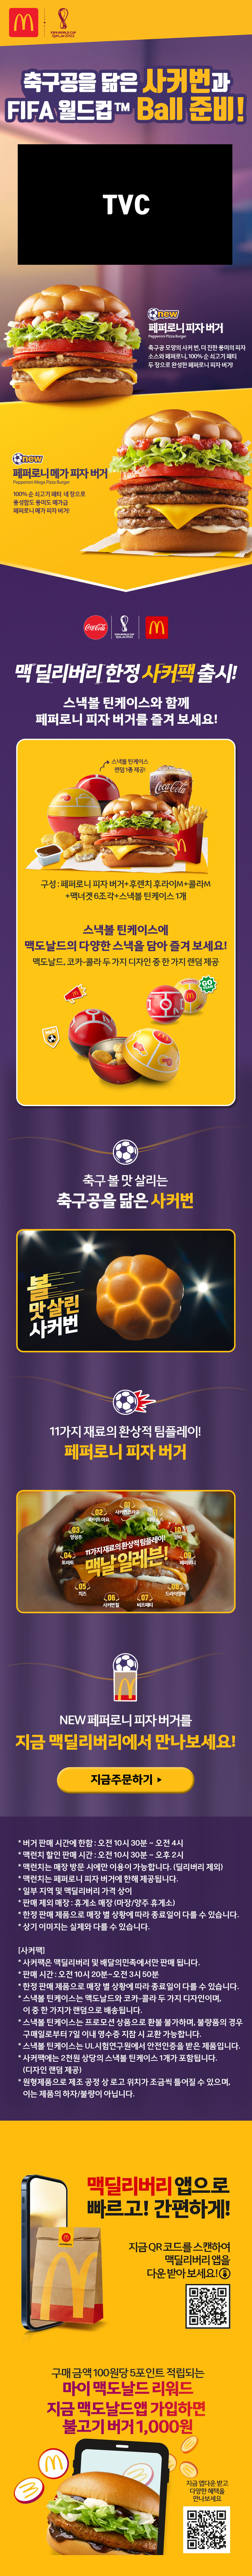 축구공을 닮은 사커번과 FIFA월드컵™ Ball 준비!